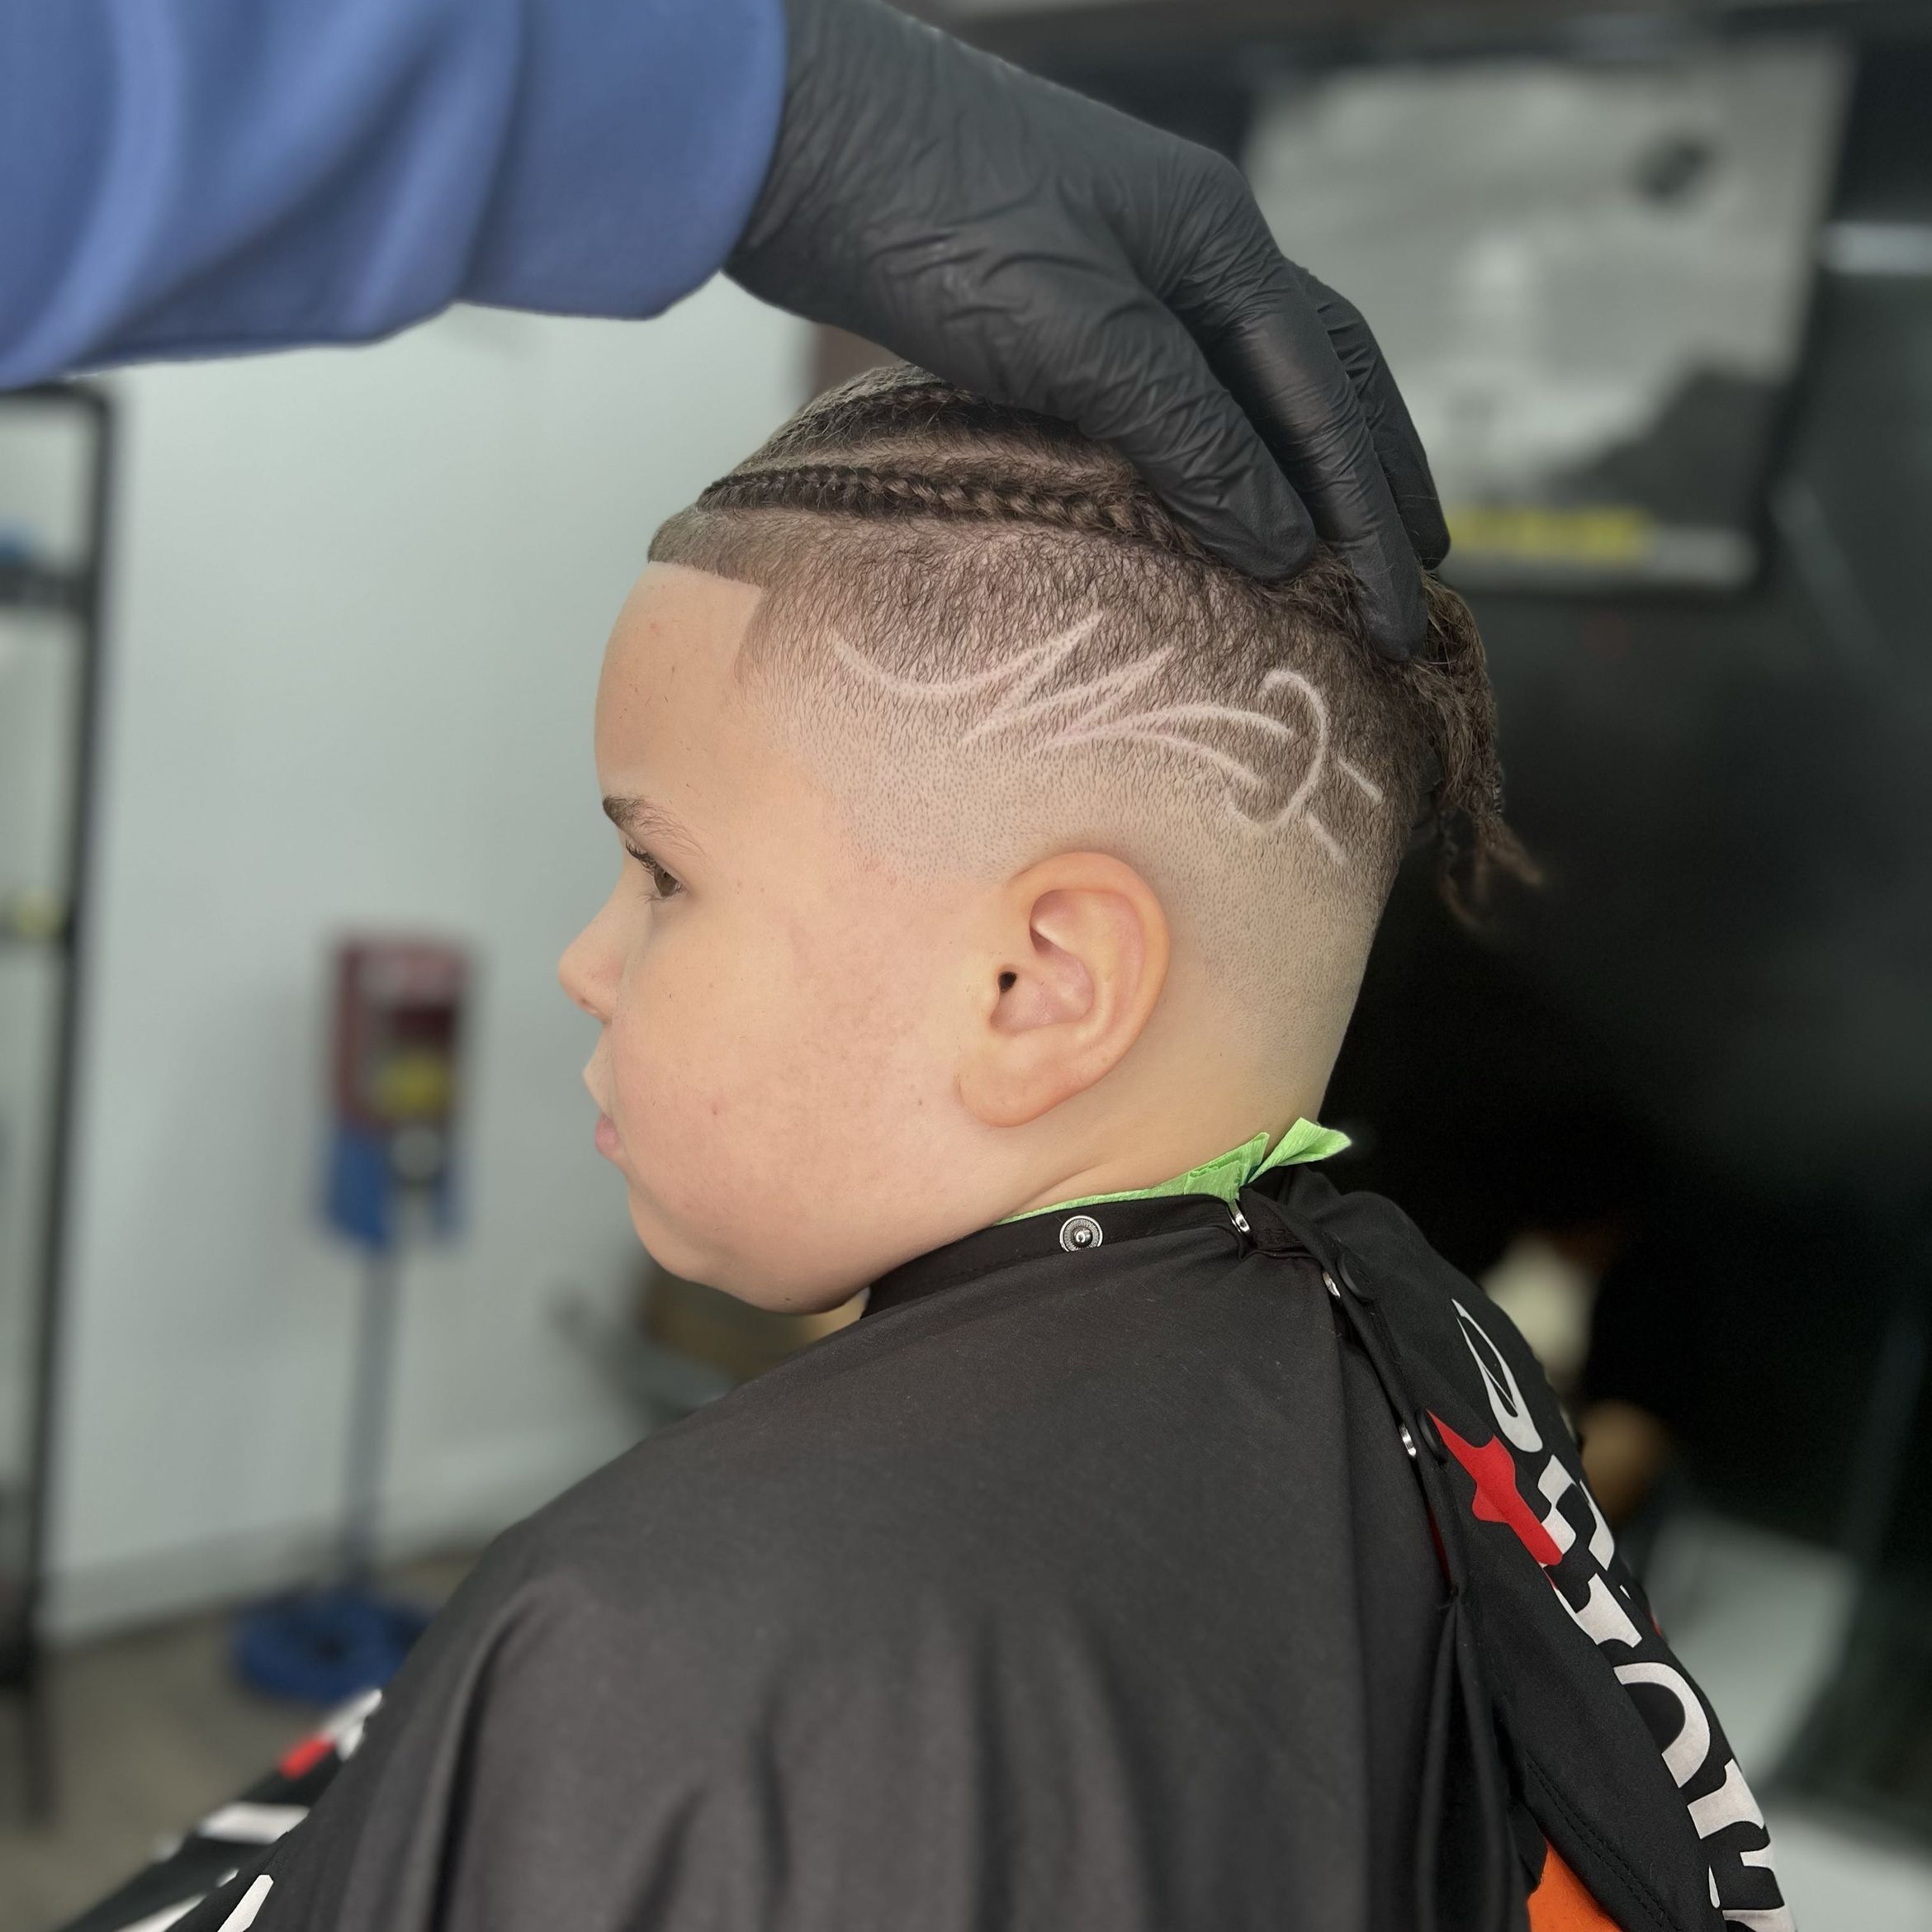 Kid’s haircut / corte de Niño portfolio